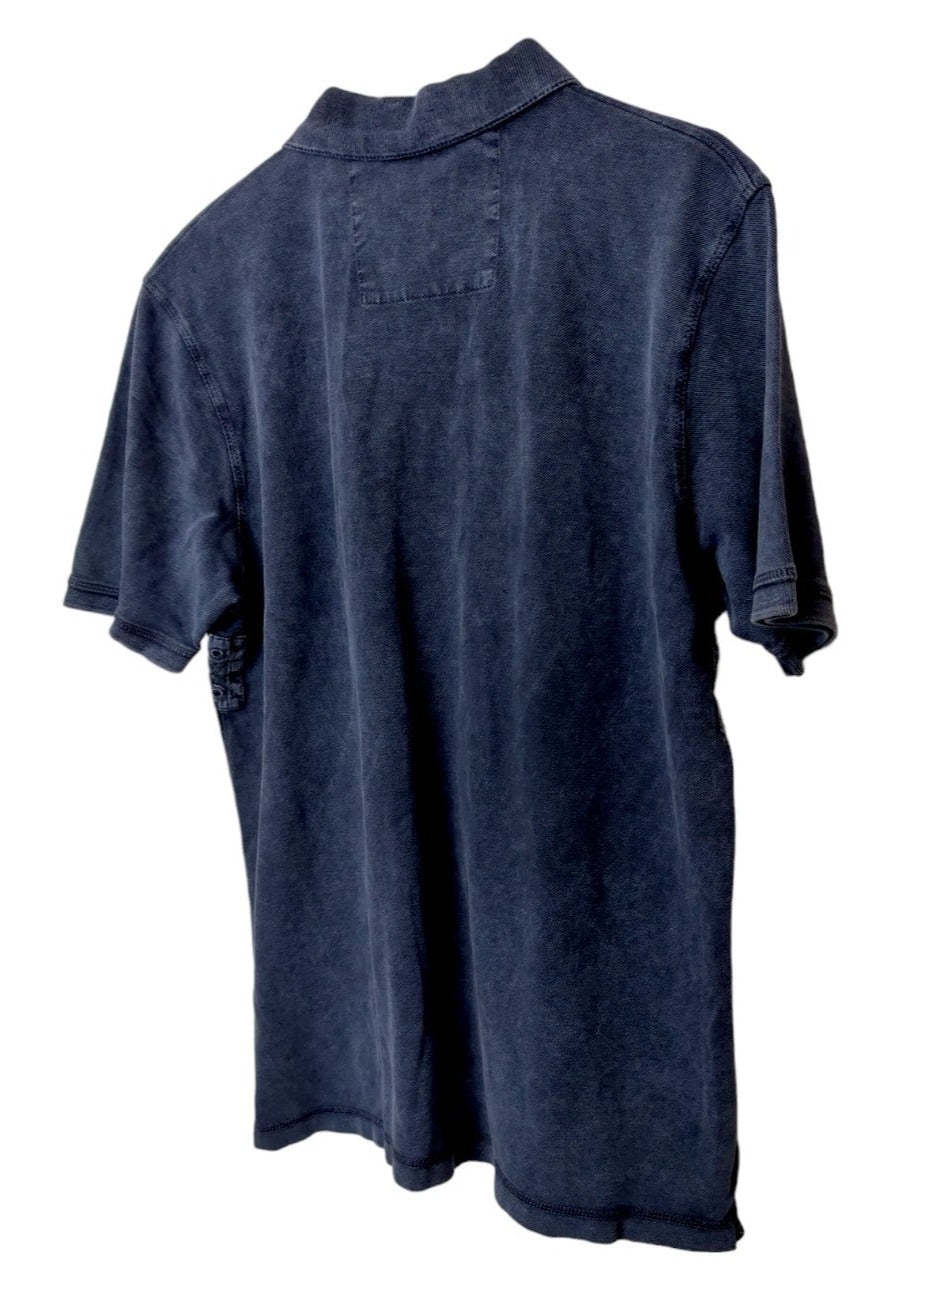 Ανδρική Μπλούζα - T-Shirt NAPAPIJRI σε Μπλε χρώμα  (Medium)